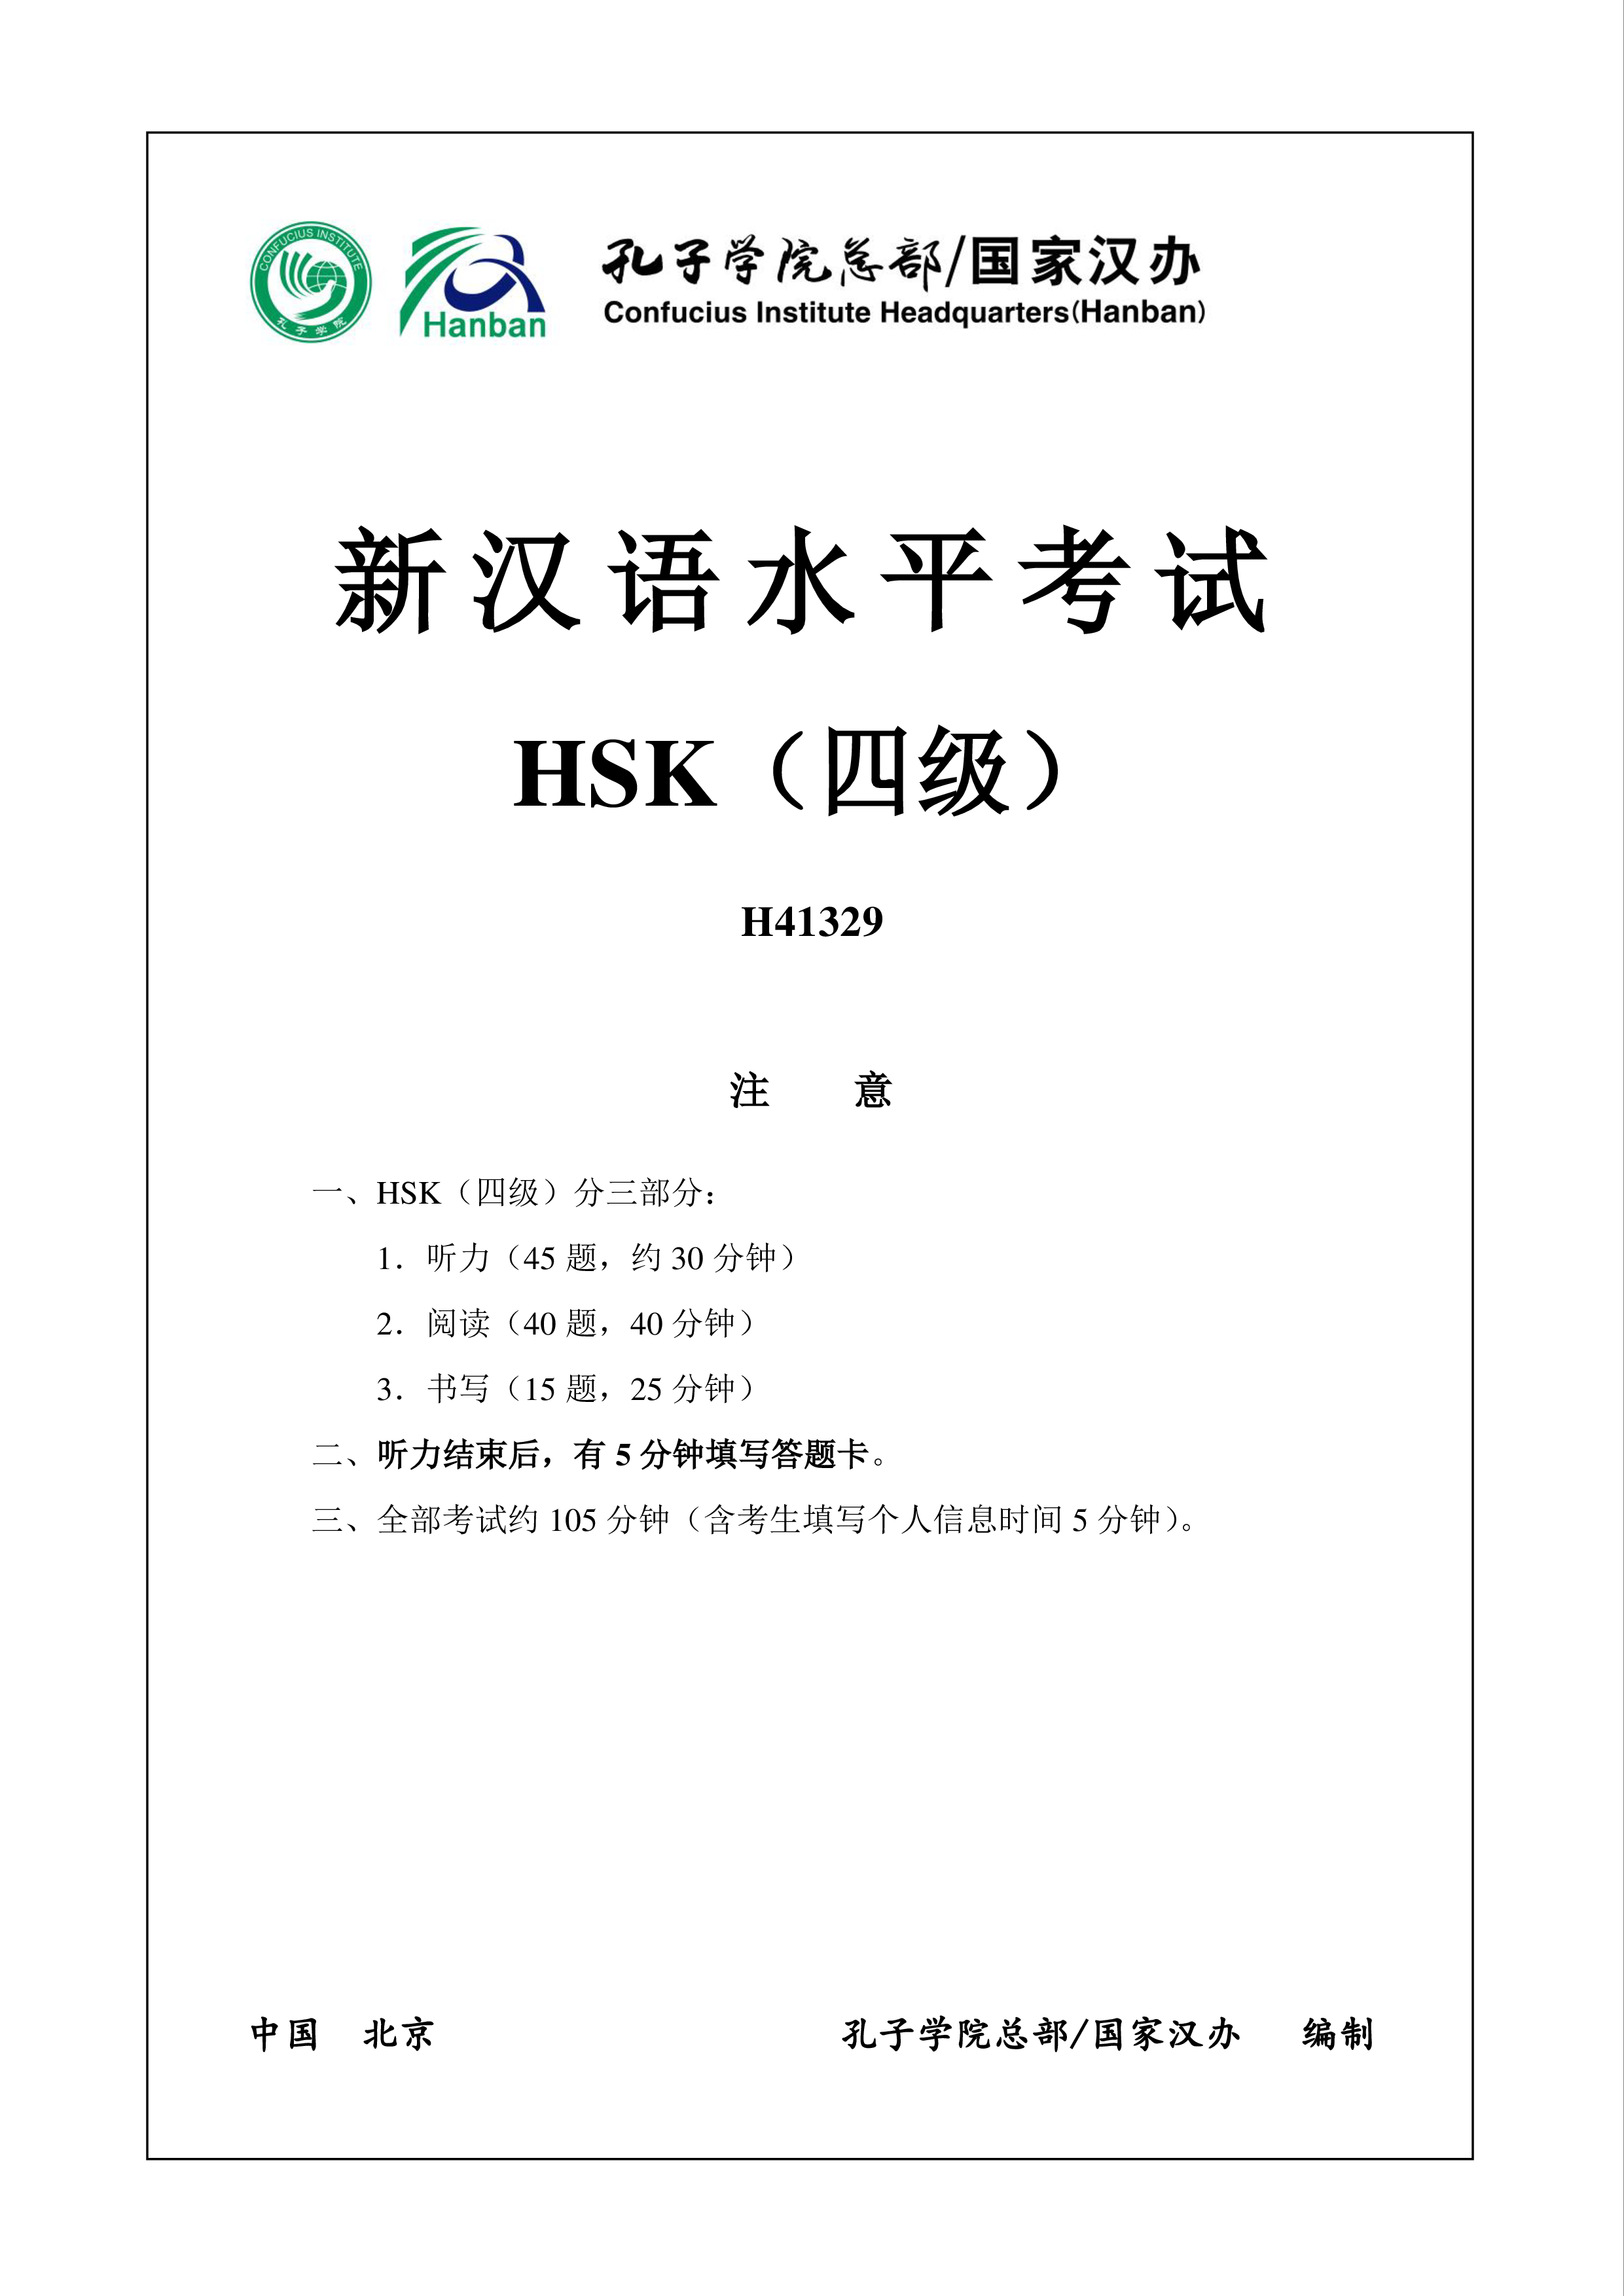 hsk4 chinees examen h41329 template